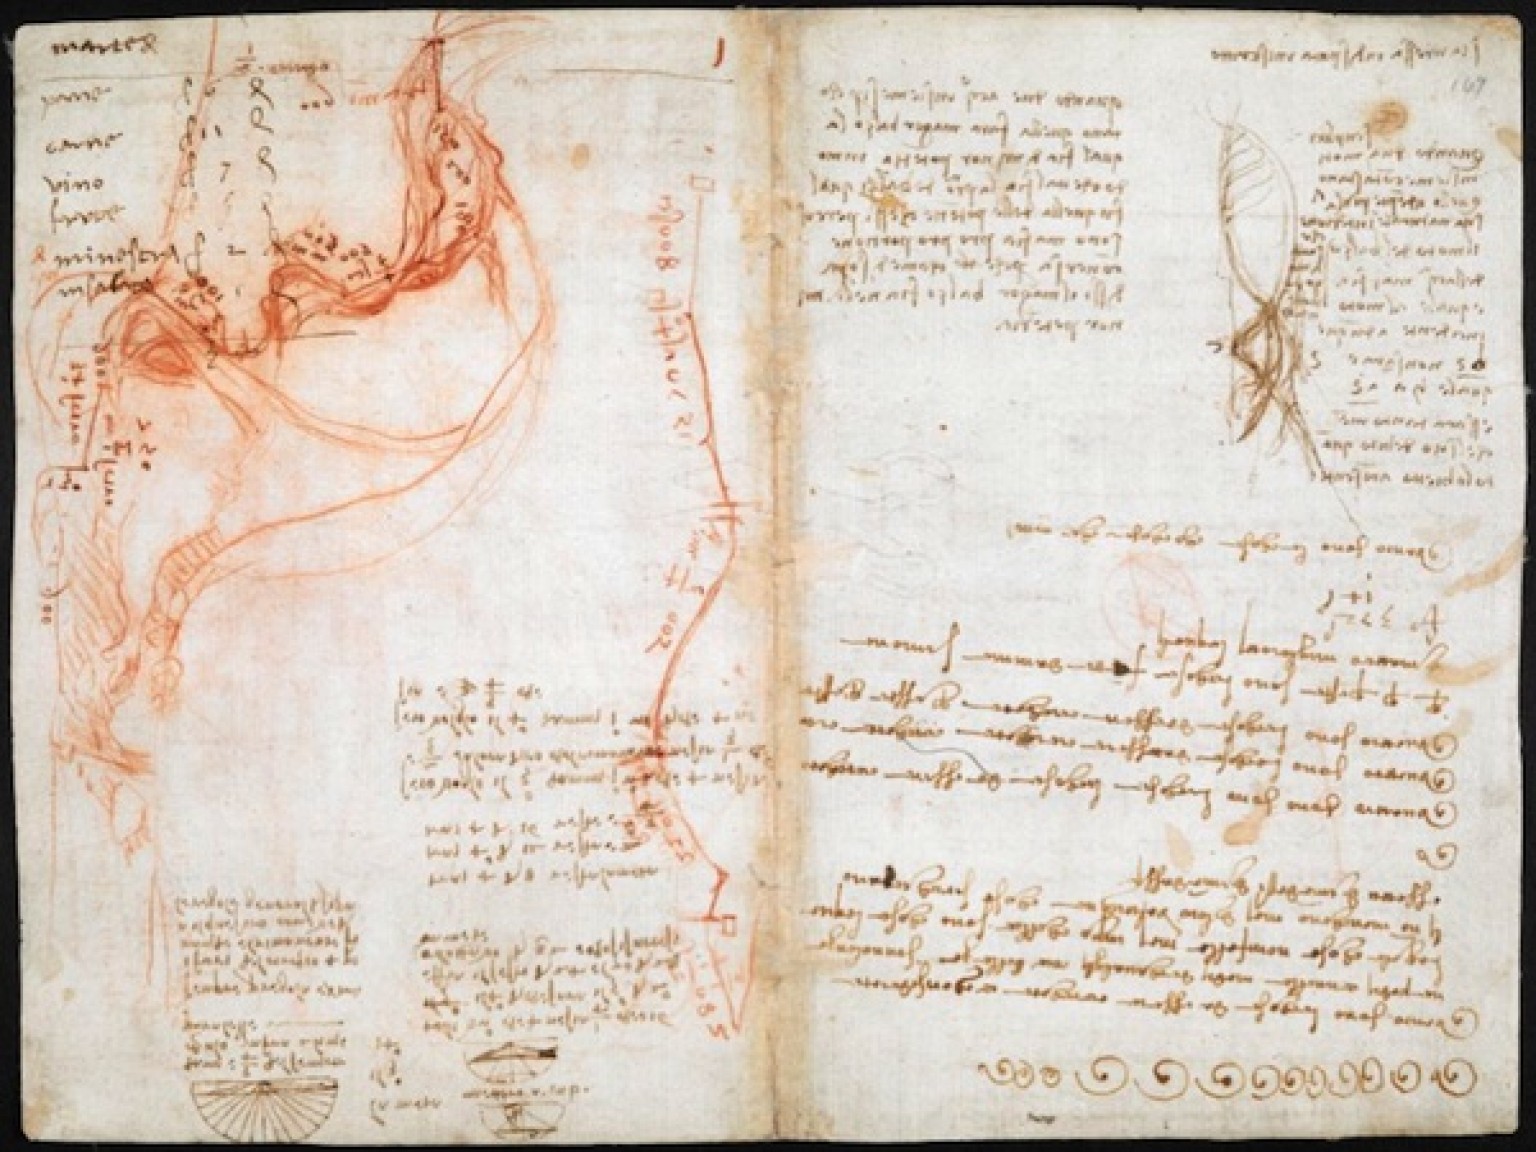 Leonardo da Vinci’s Visionary Notebooks Now Online: Browse 570 Digitized Pages Artes & contextos o DAVINCIDIARIES facebook